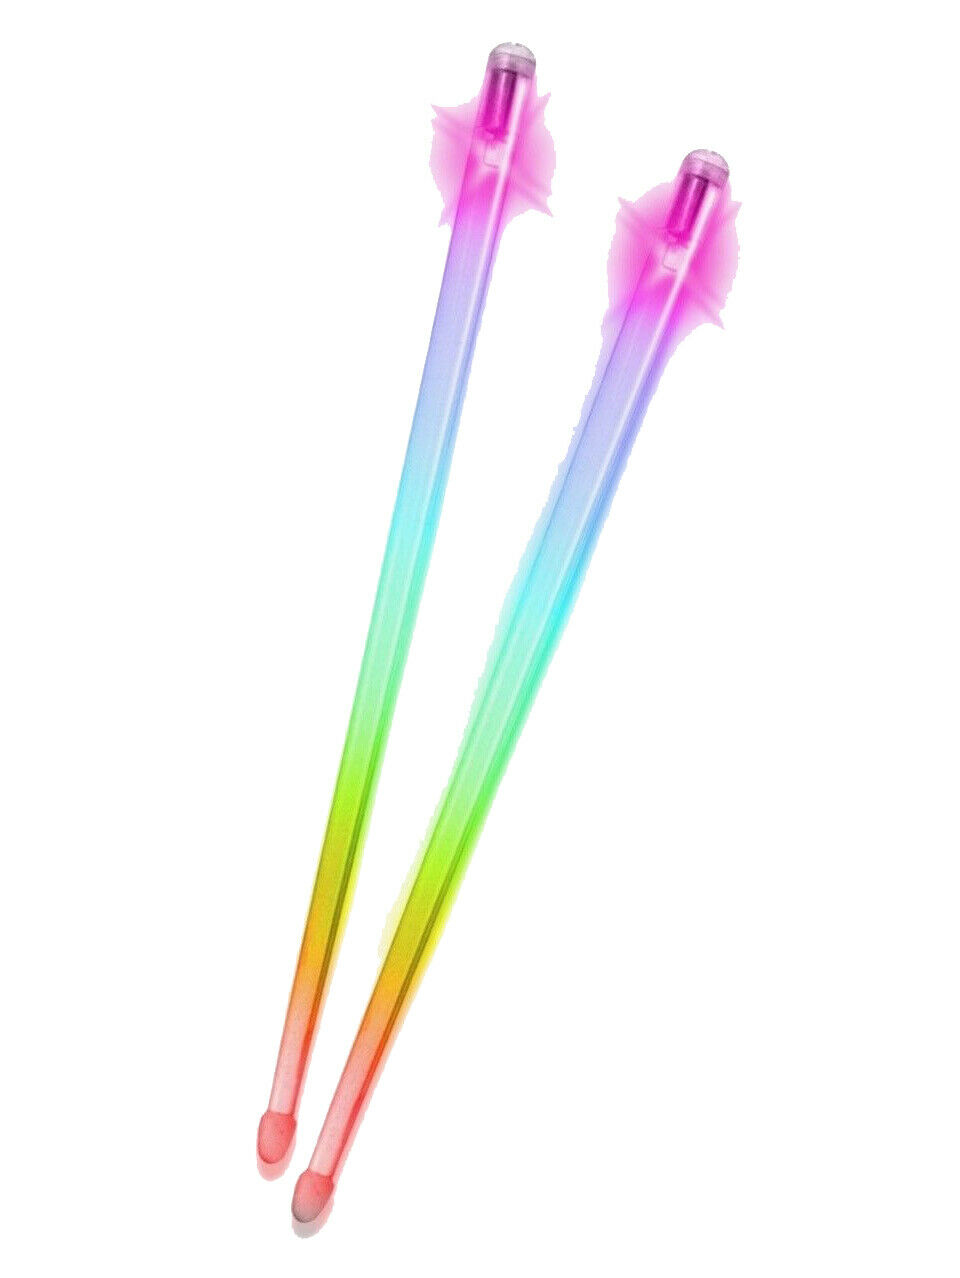 Firestix Light Up Lexan Drumsticks - 1 Pair - Color Changing (rainbow)